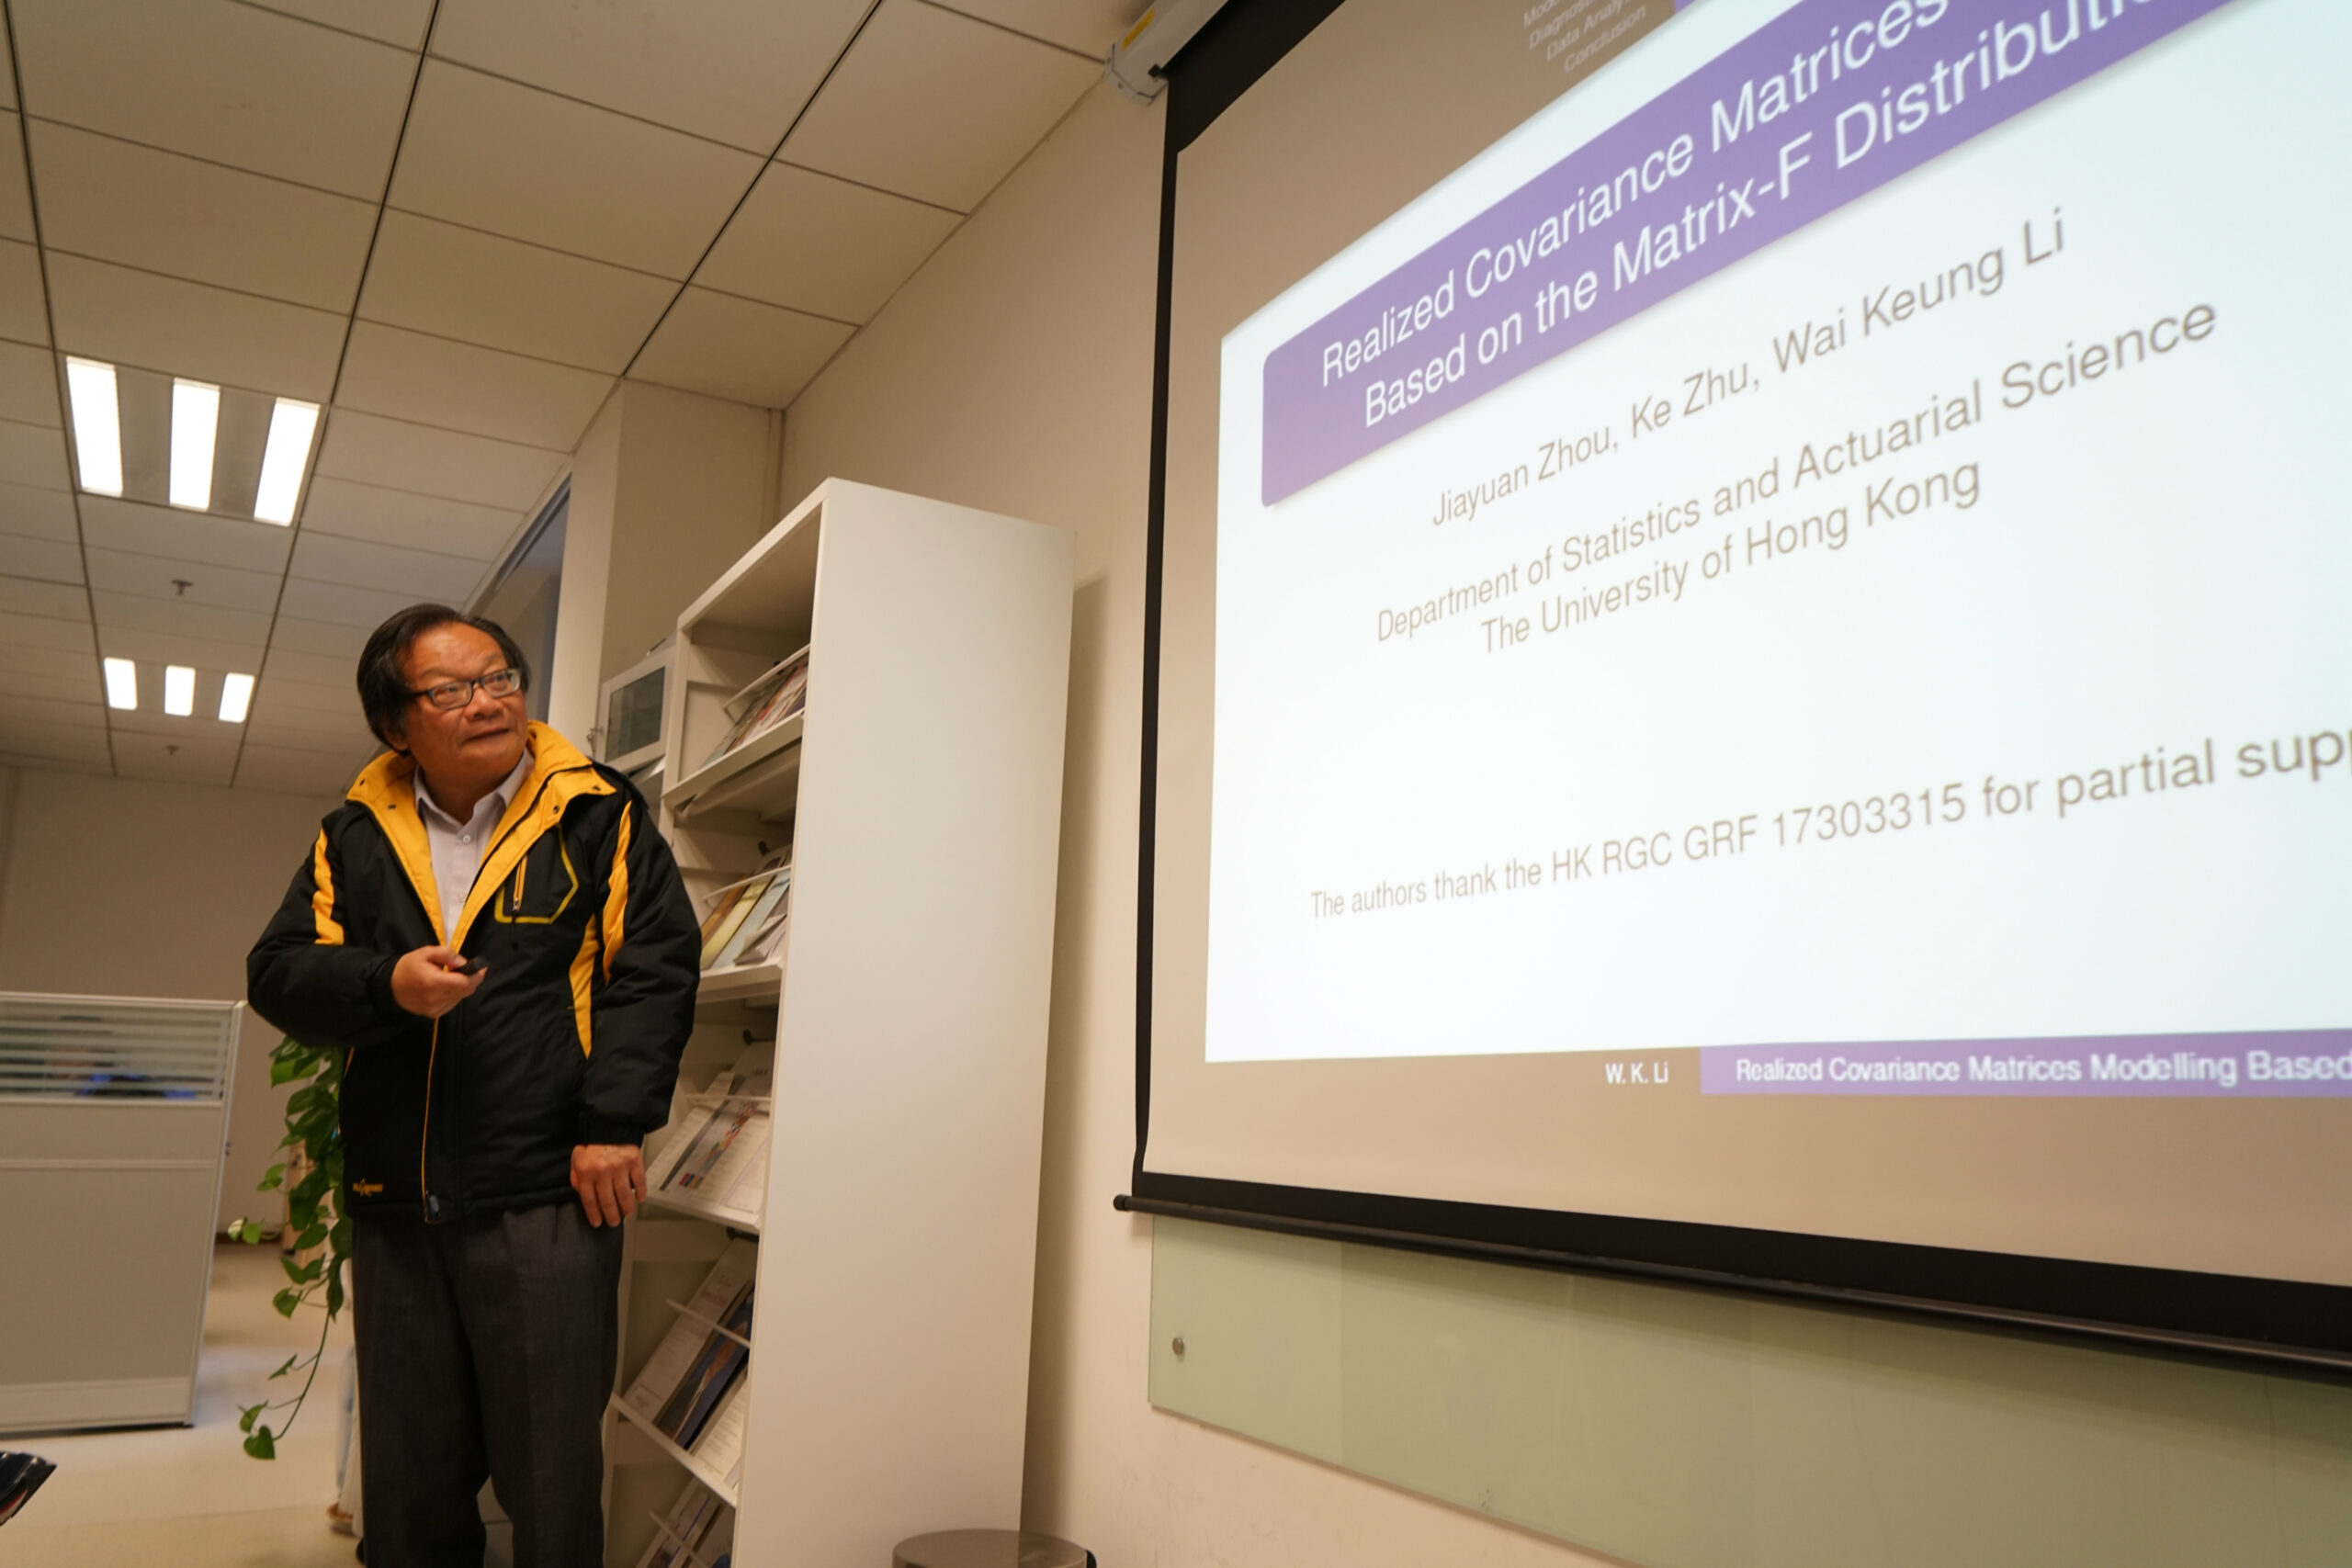 Prof. Wai Keung Li from University of Hong Kong Visits the Center and Gives a Talk